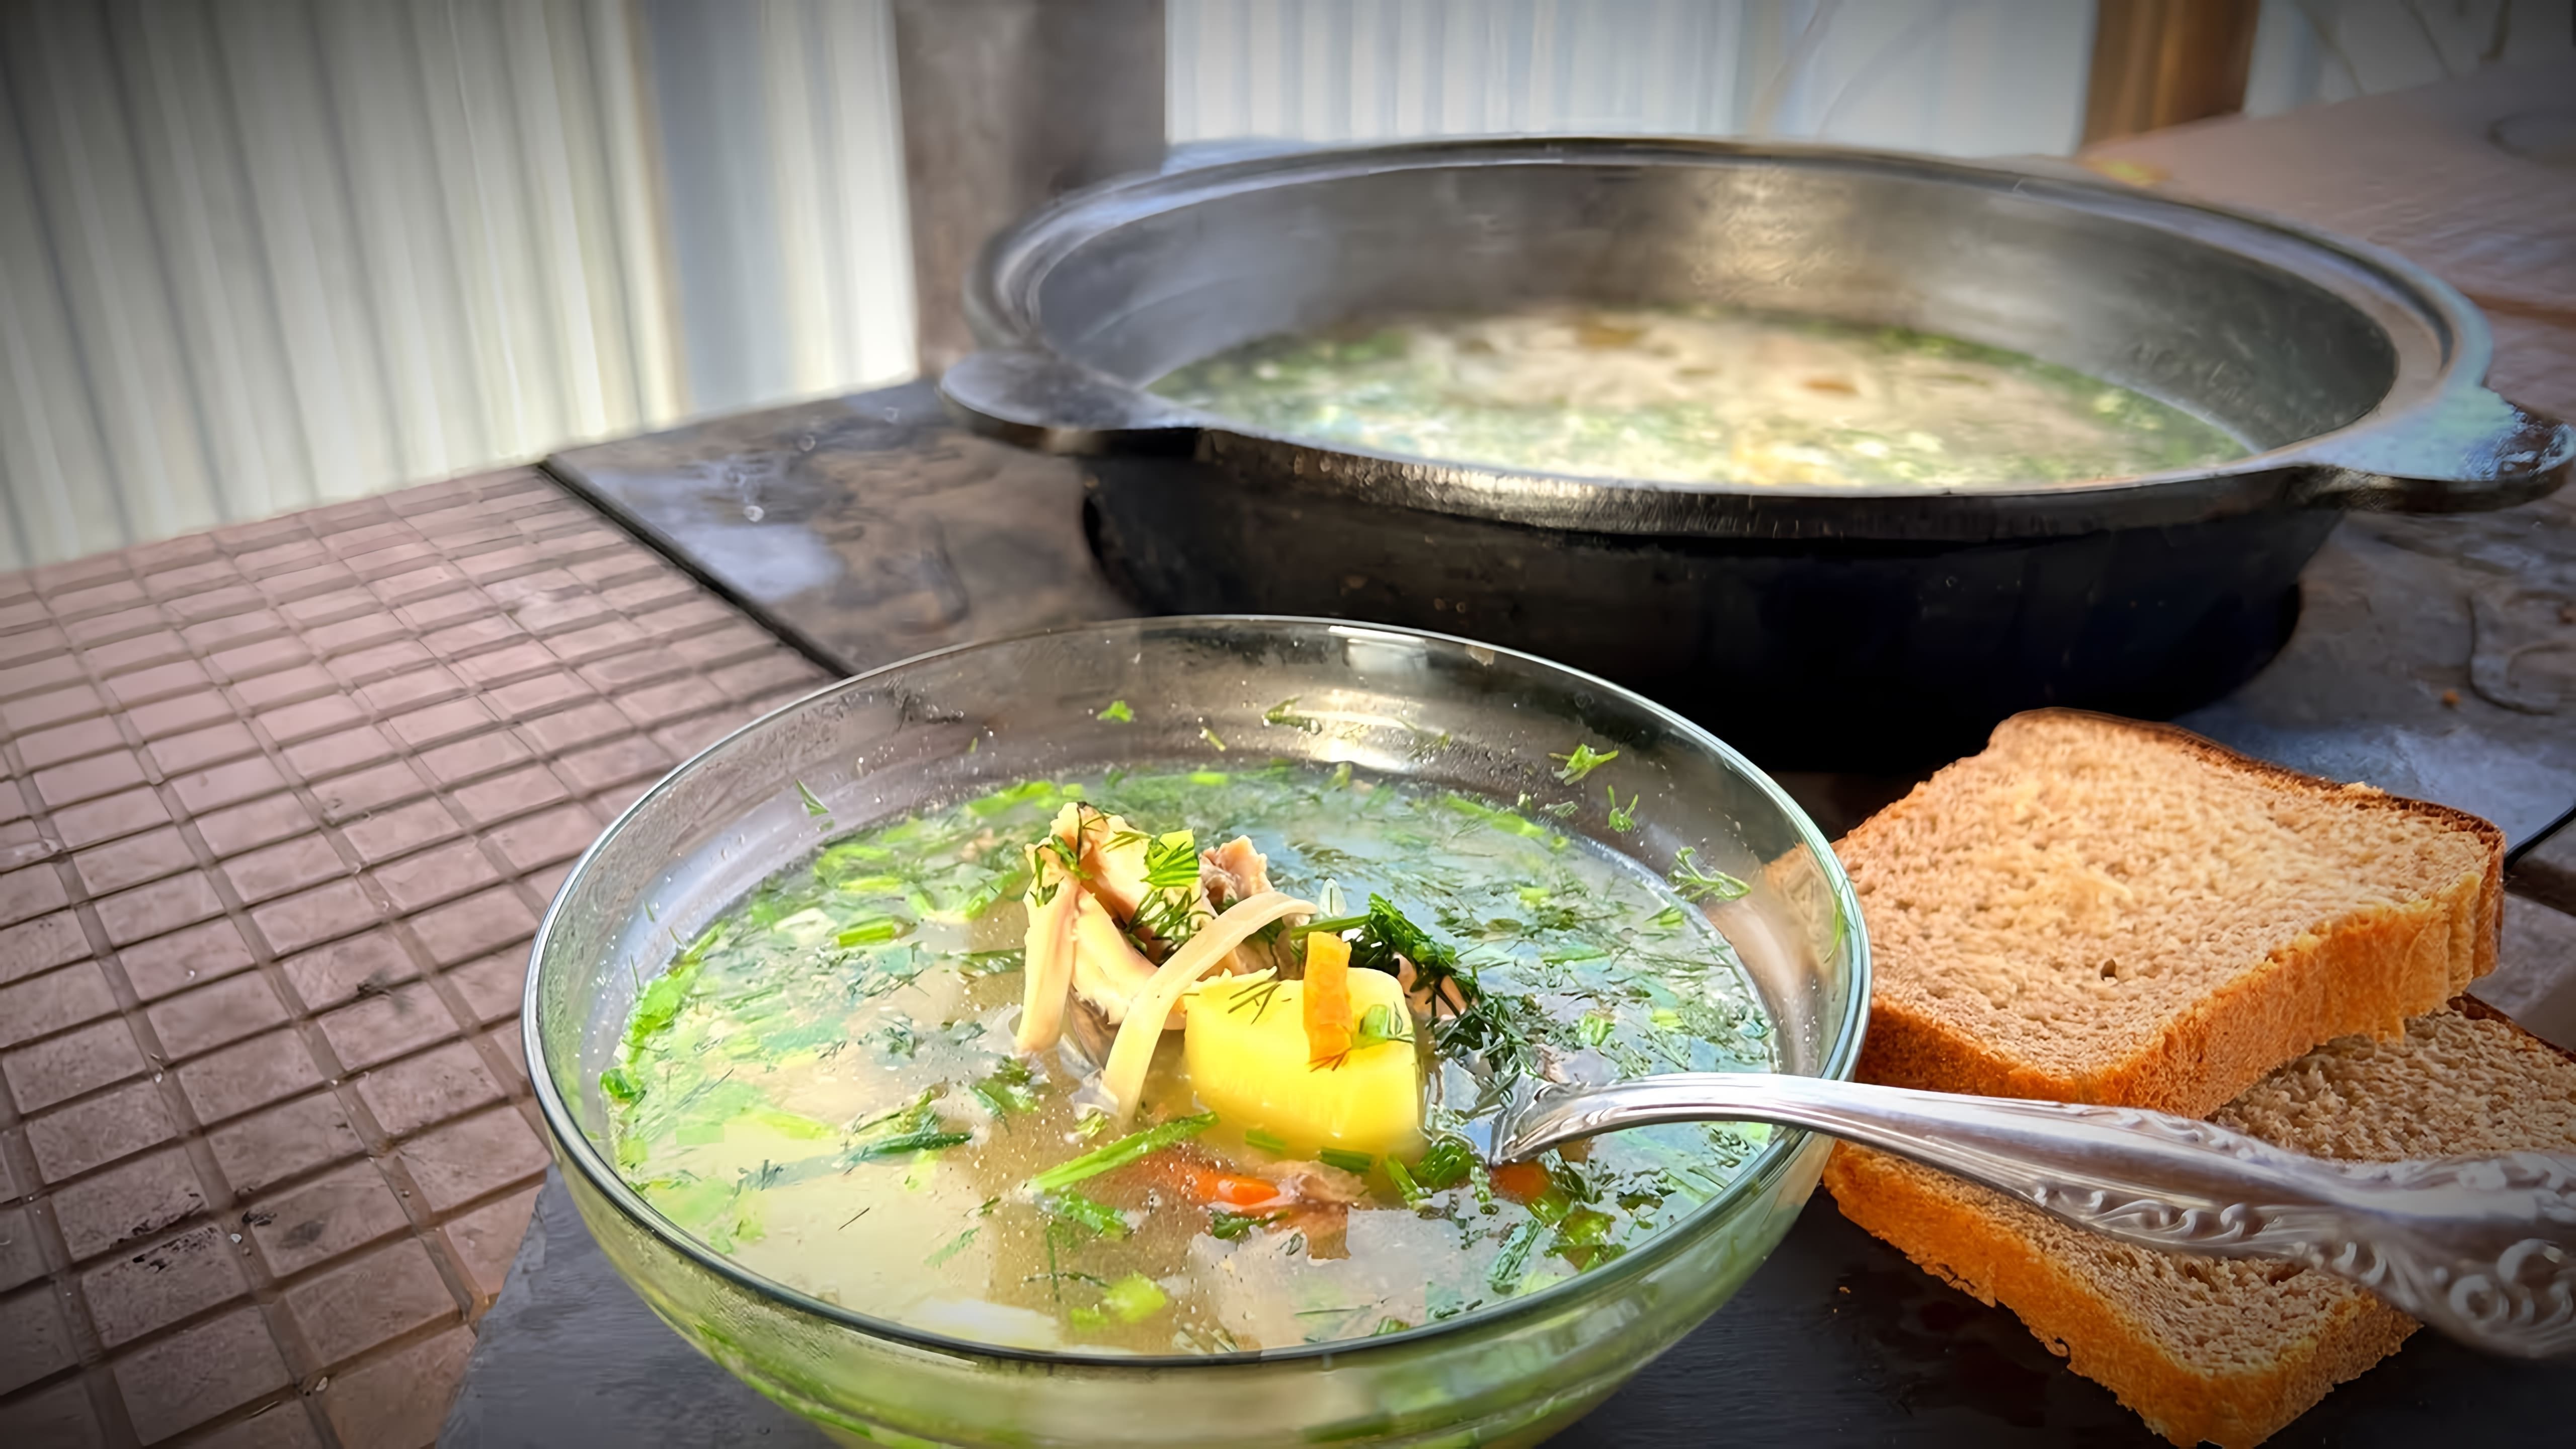 В этом видео демонстрируется процесс приготовления дачного супа из домашней курицы с лапшой в казане